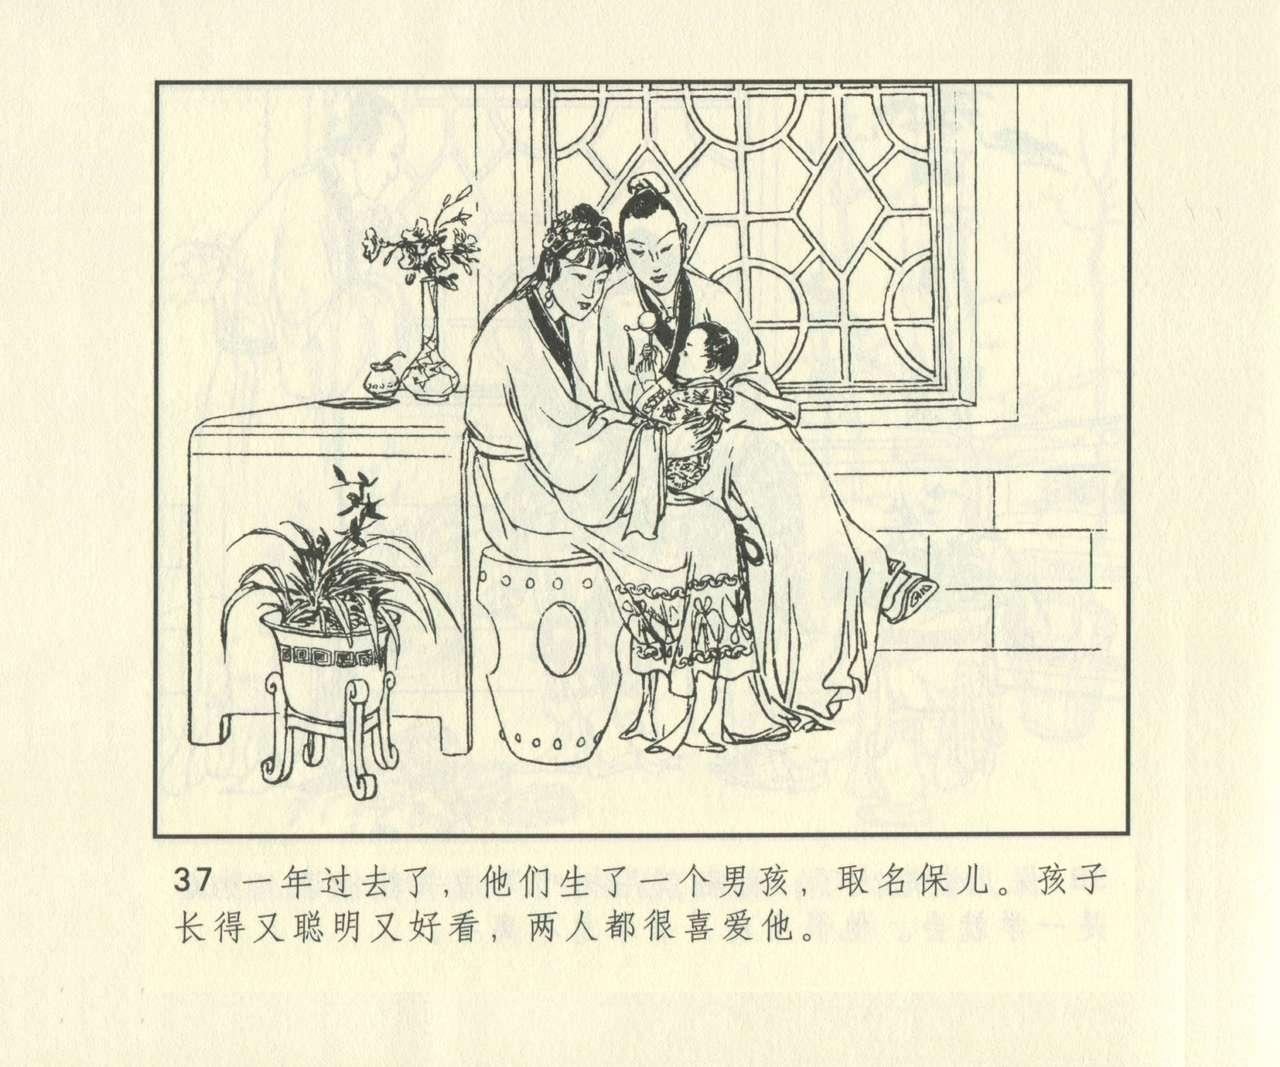 聊斋志异 张玮等绘 天津人民美术出版社 卷二十一 ~ 三十 653